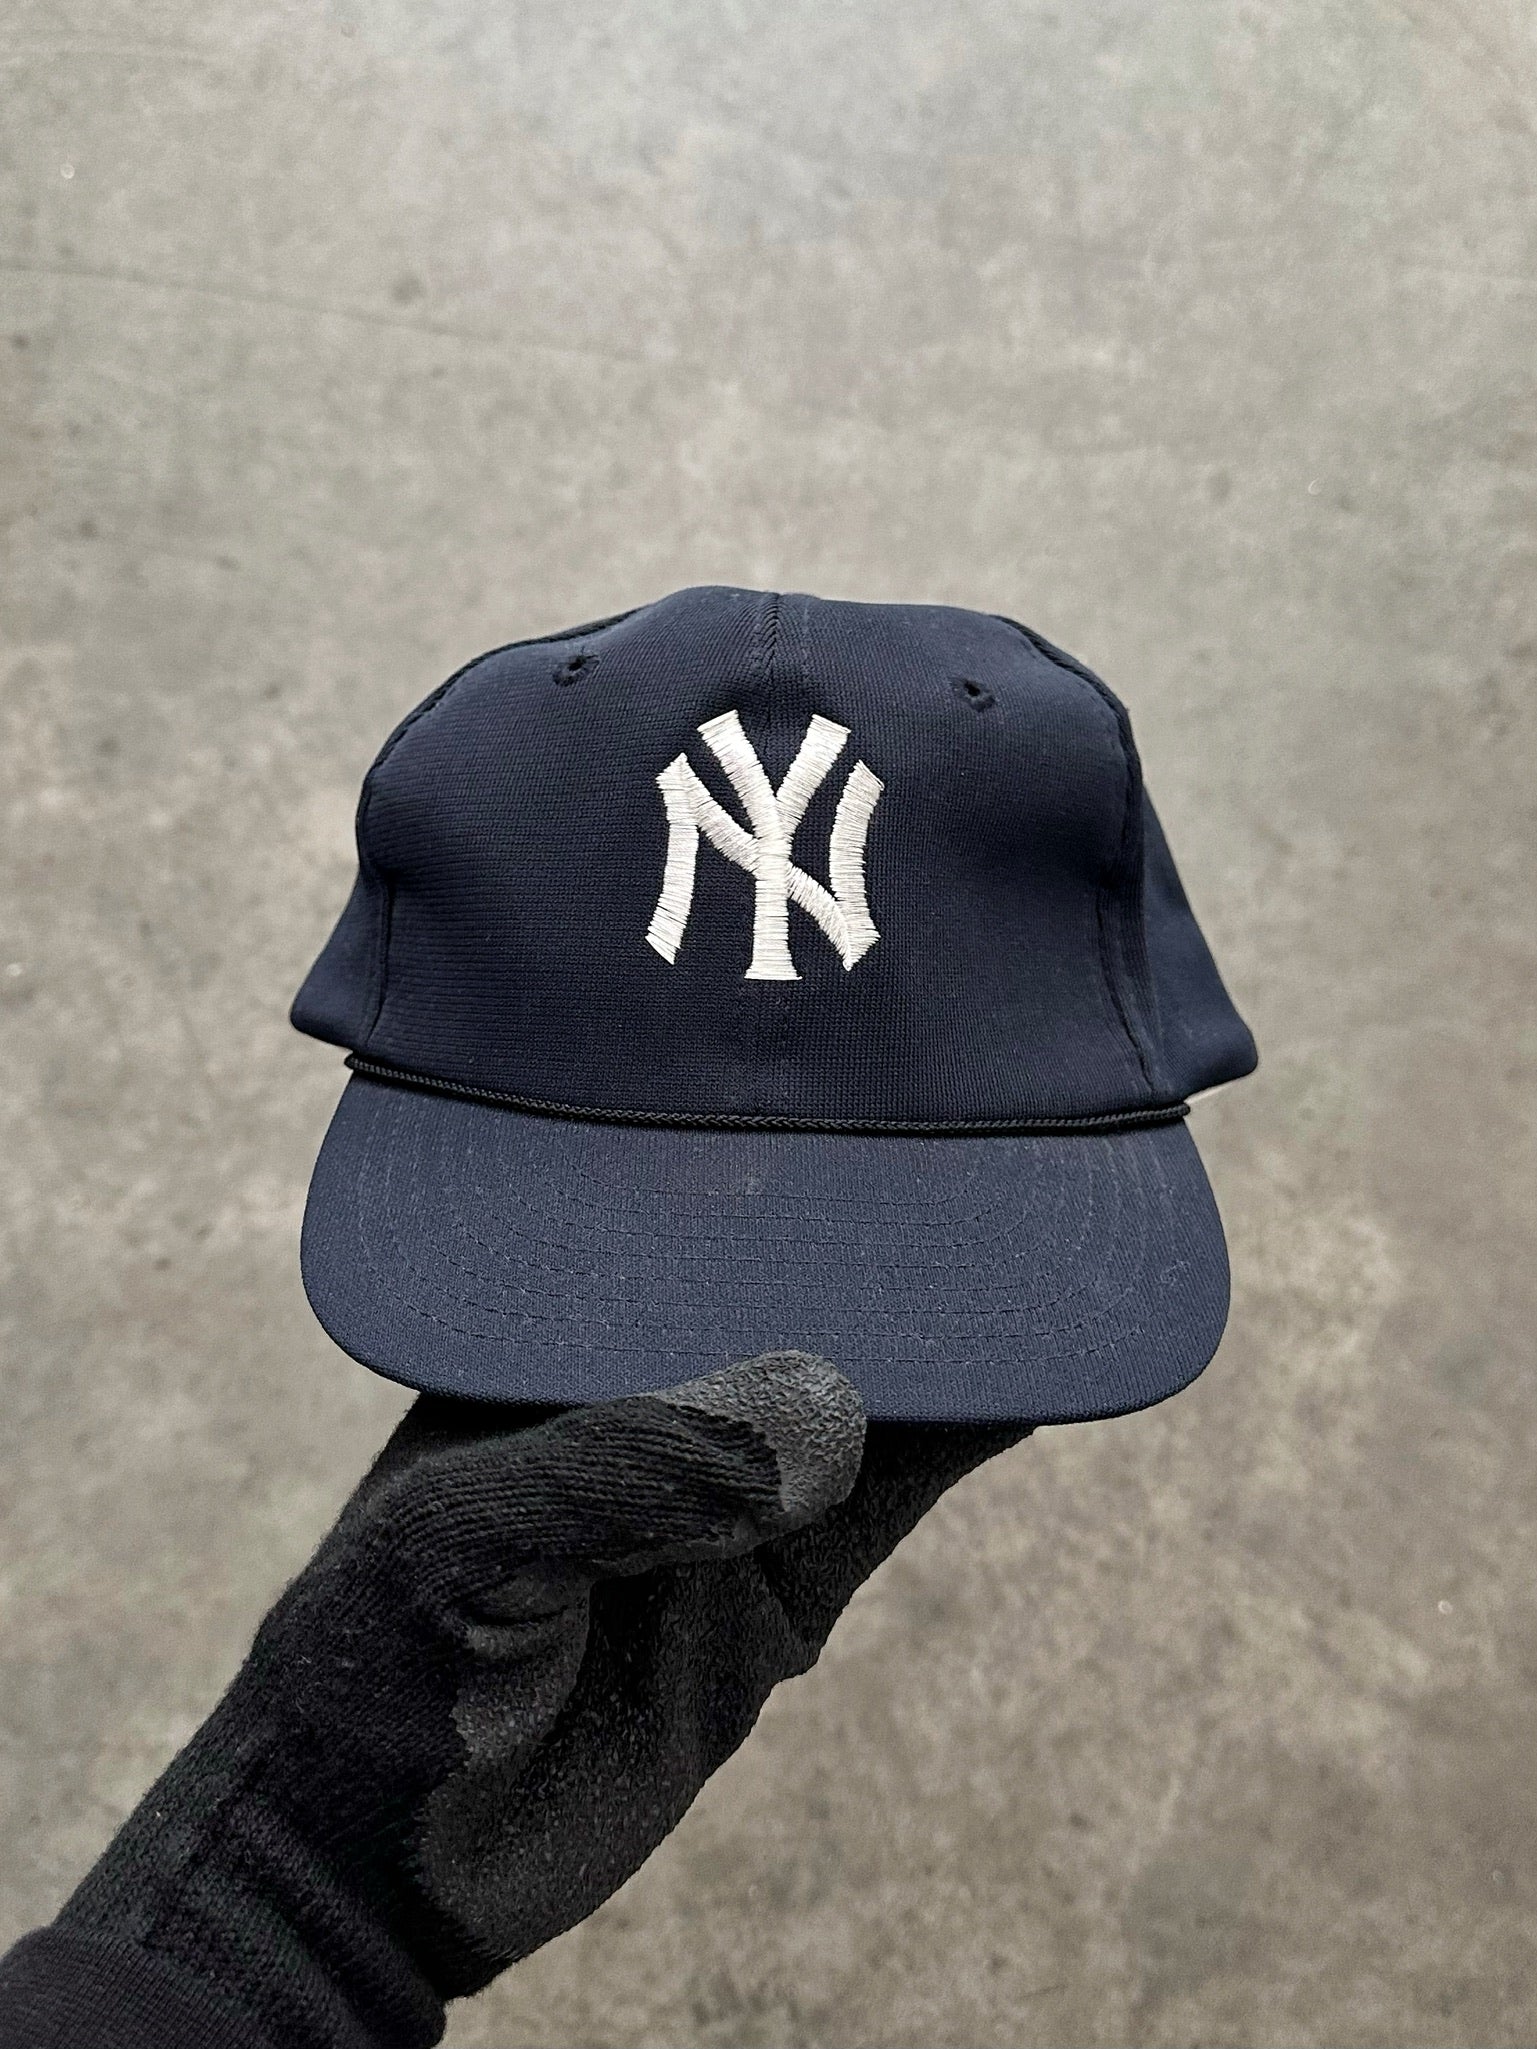 “NY” TRUCKER HAT - 1990S#N#– AKIMBO CLUB